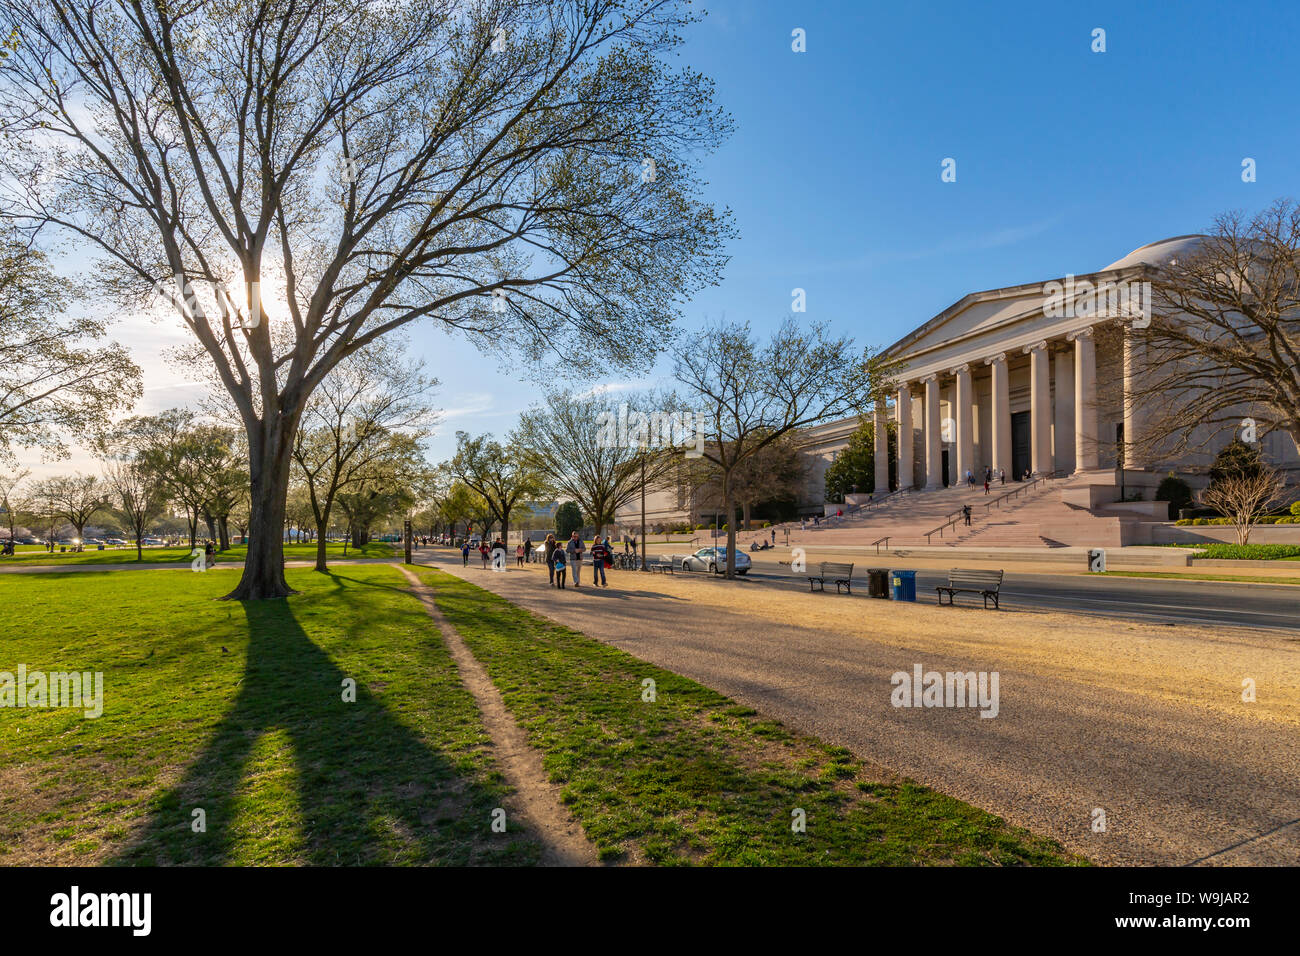 Ansicht der Nationalen Kunstgalerie auf der National Mall im Frühjahr, Washington D.C., Vereinigte Staaten von Amerika, Nordamerika Stockfoto